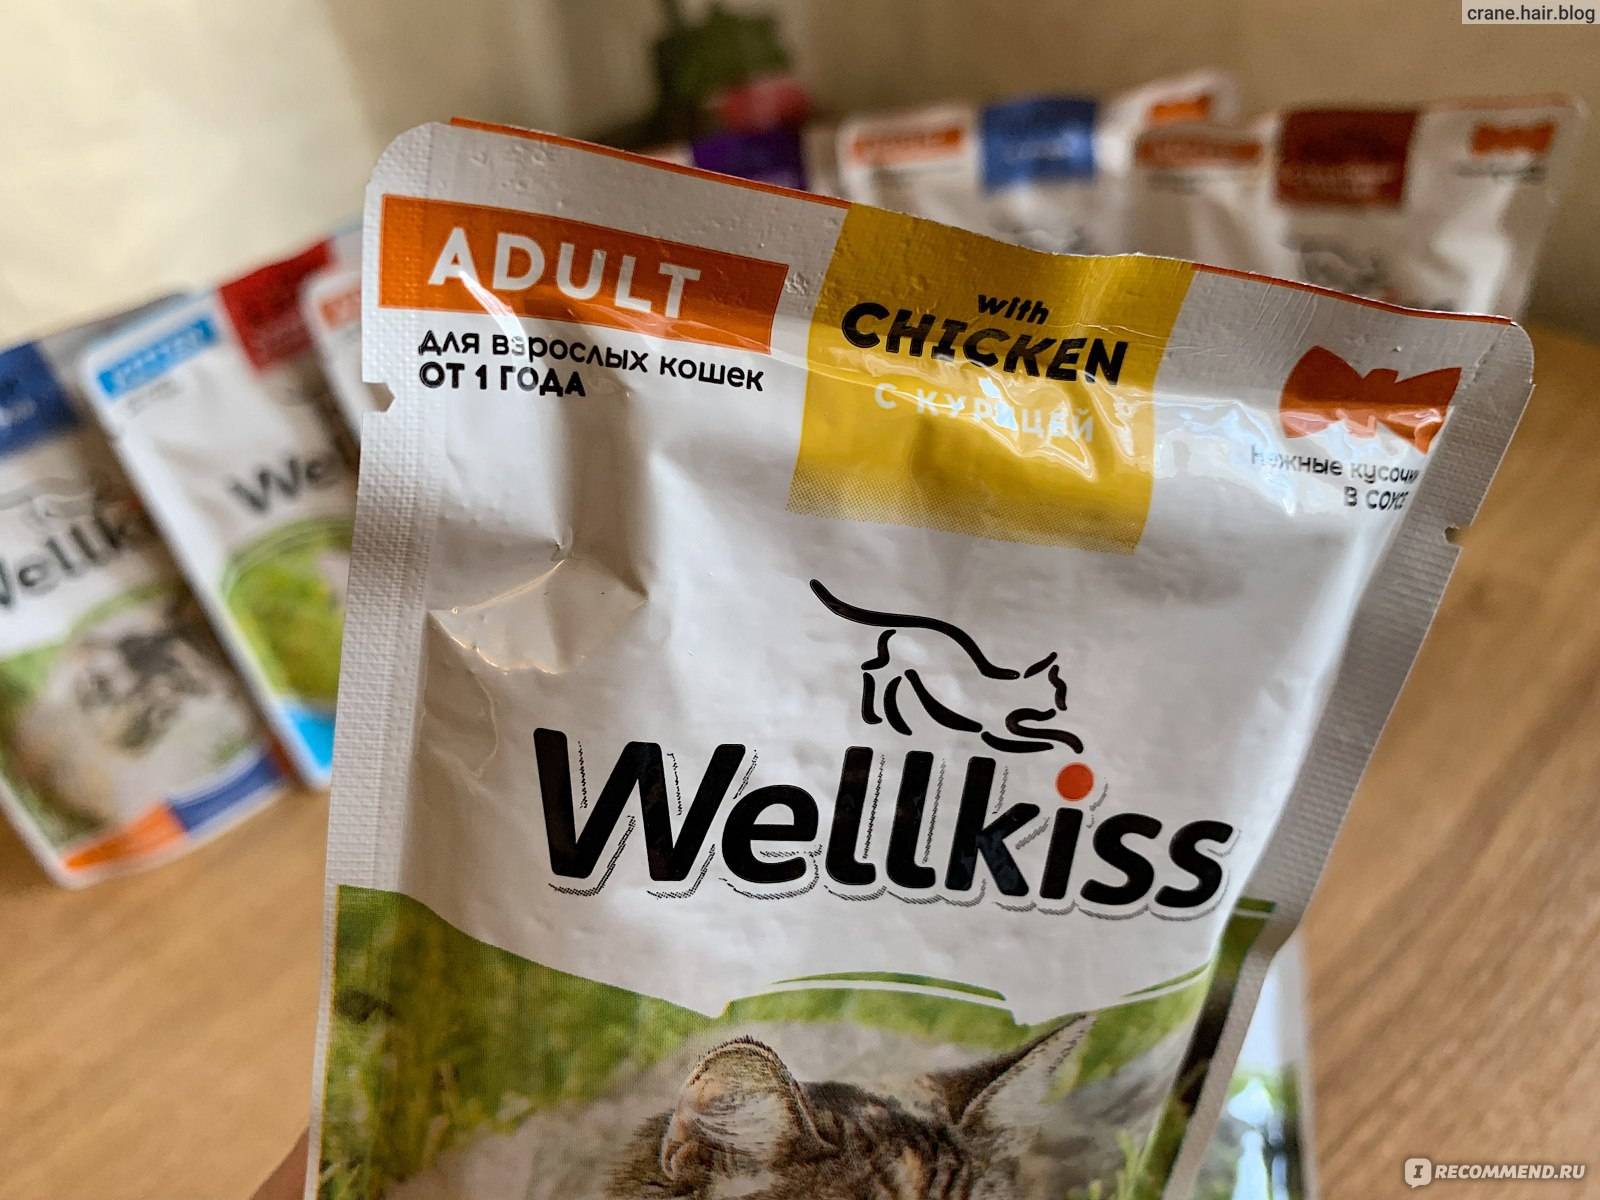 Корм для кошек wellkiss: отзывы ветеринаров и владельцев животных о нем, его состав и виды, плюсы и минусы